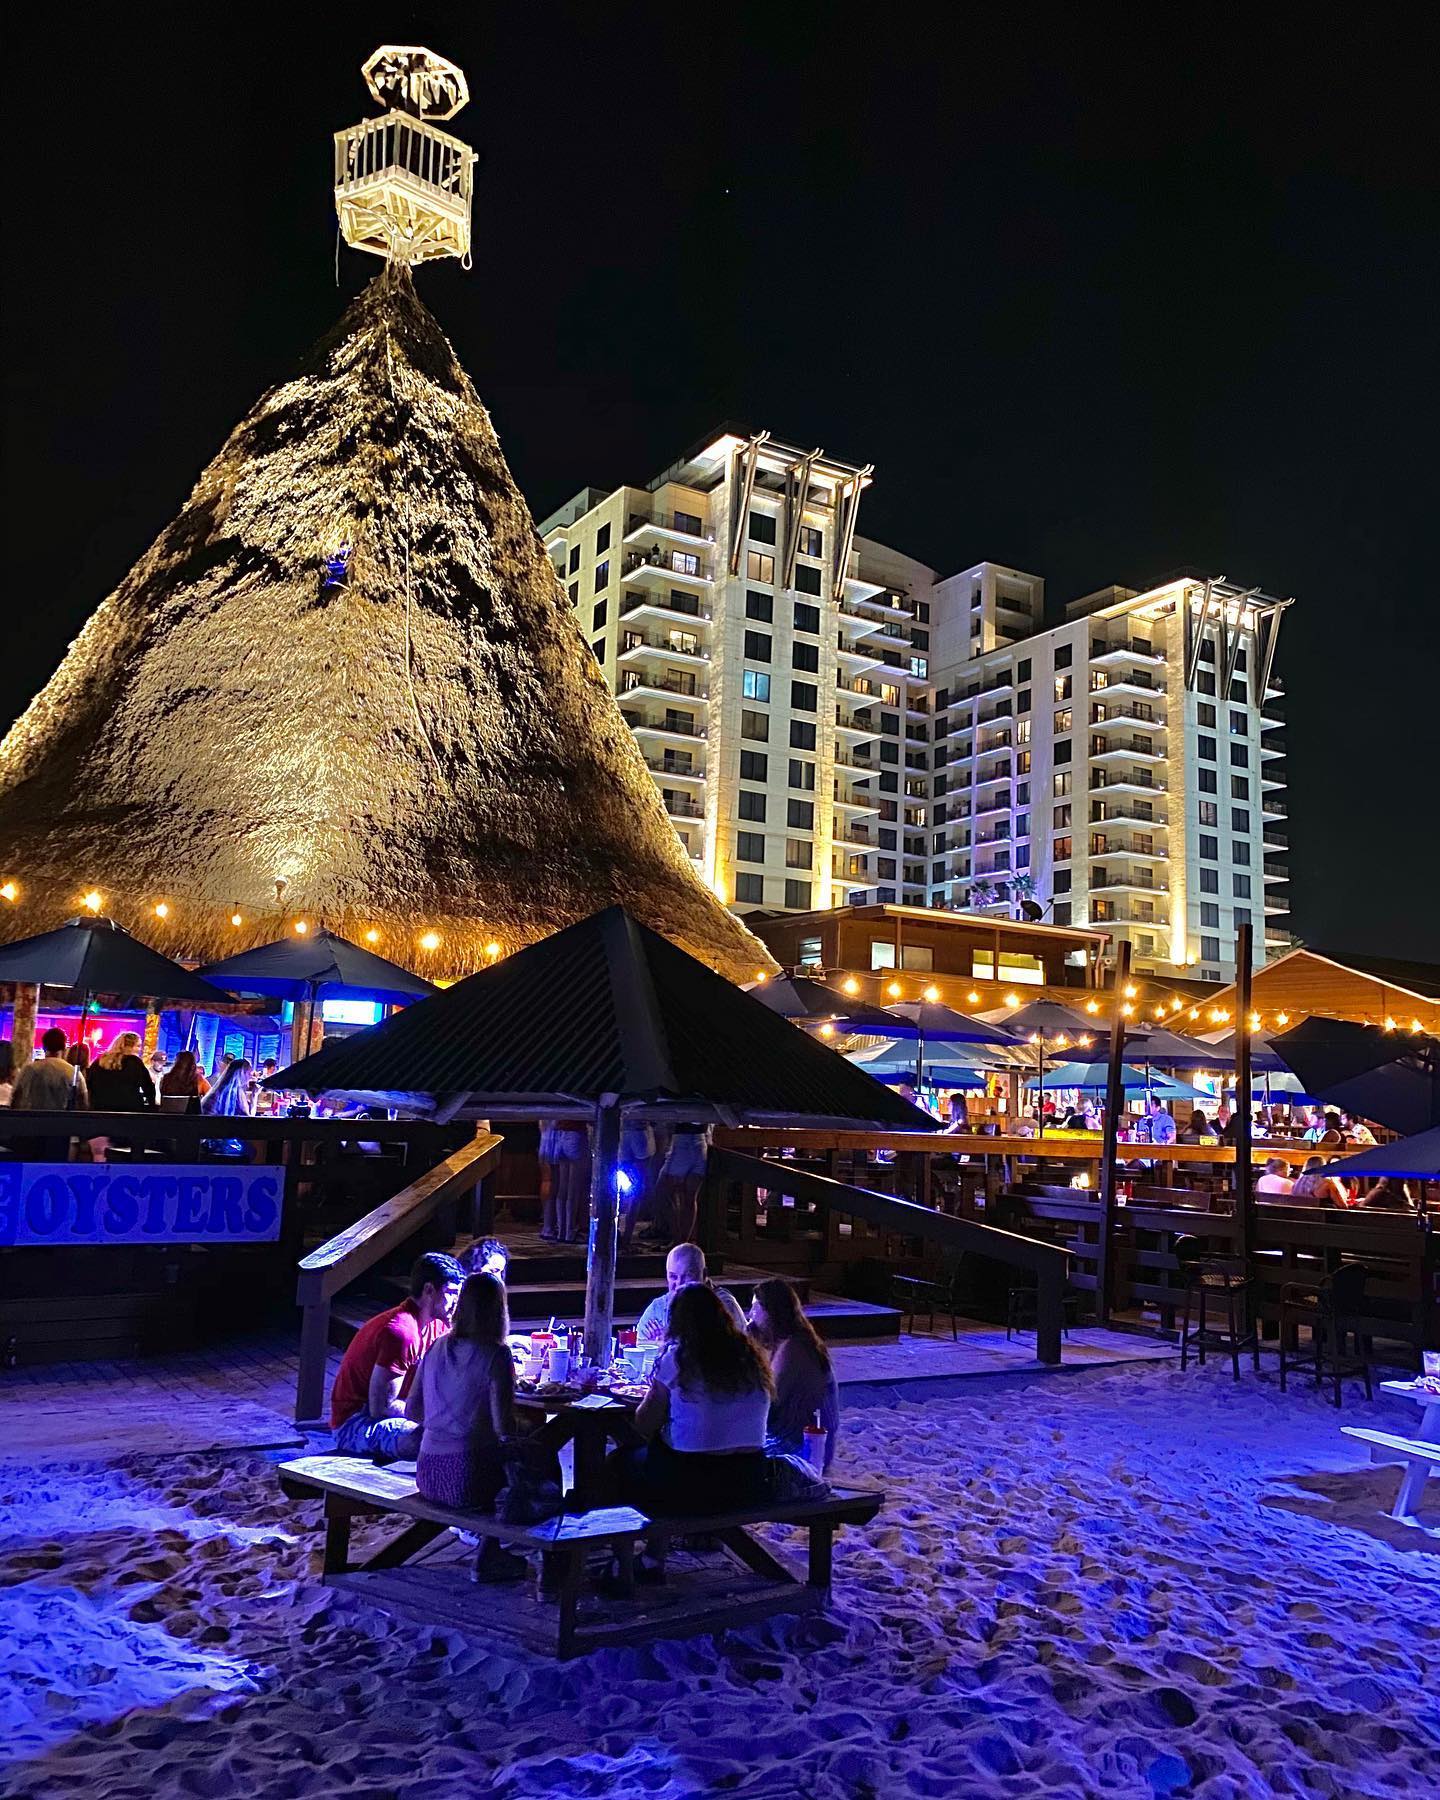 Sharky's Beachfront Restaurant - Panama City Beach Hotels, Condos